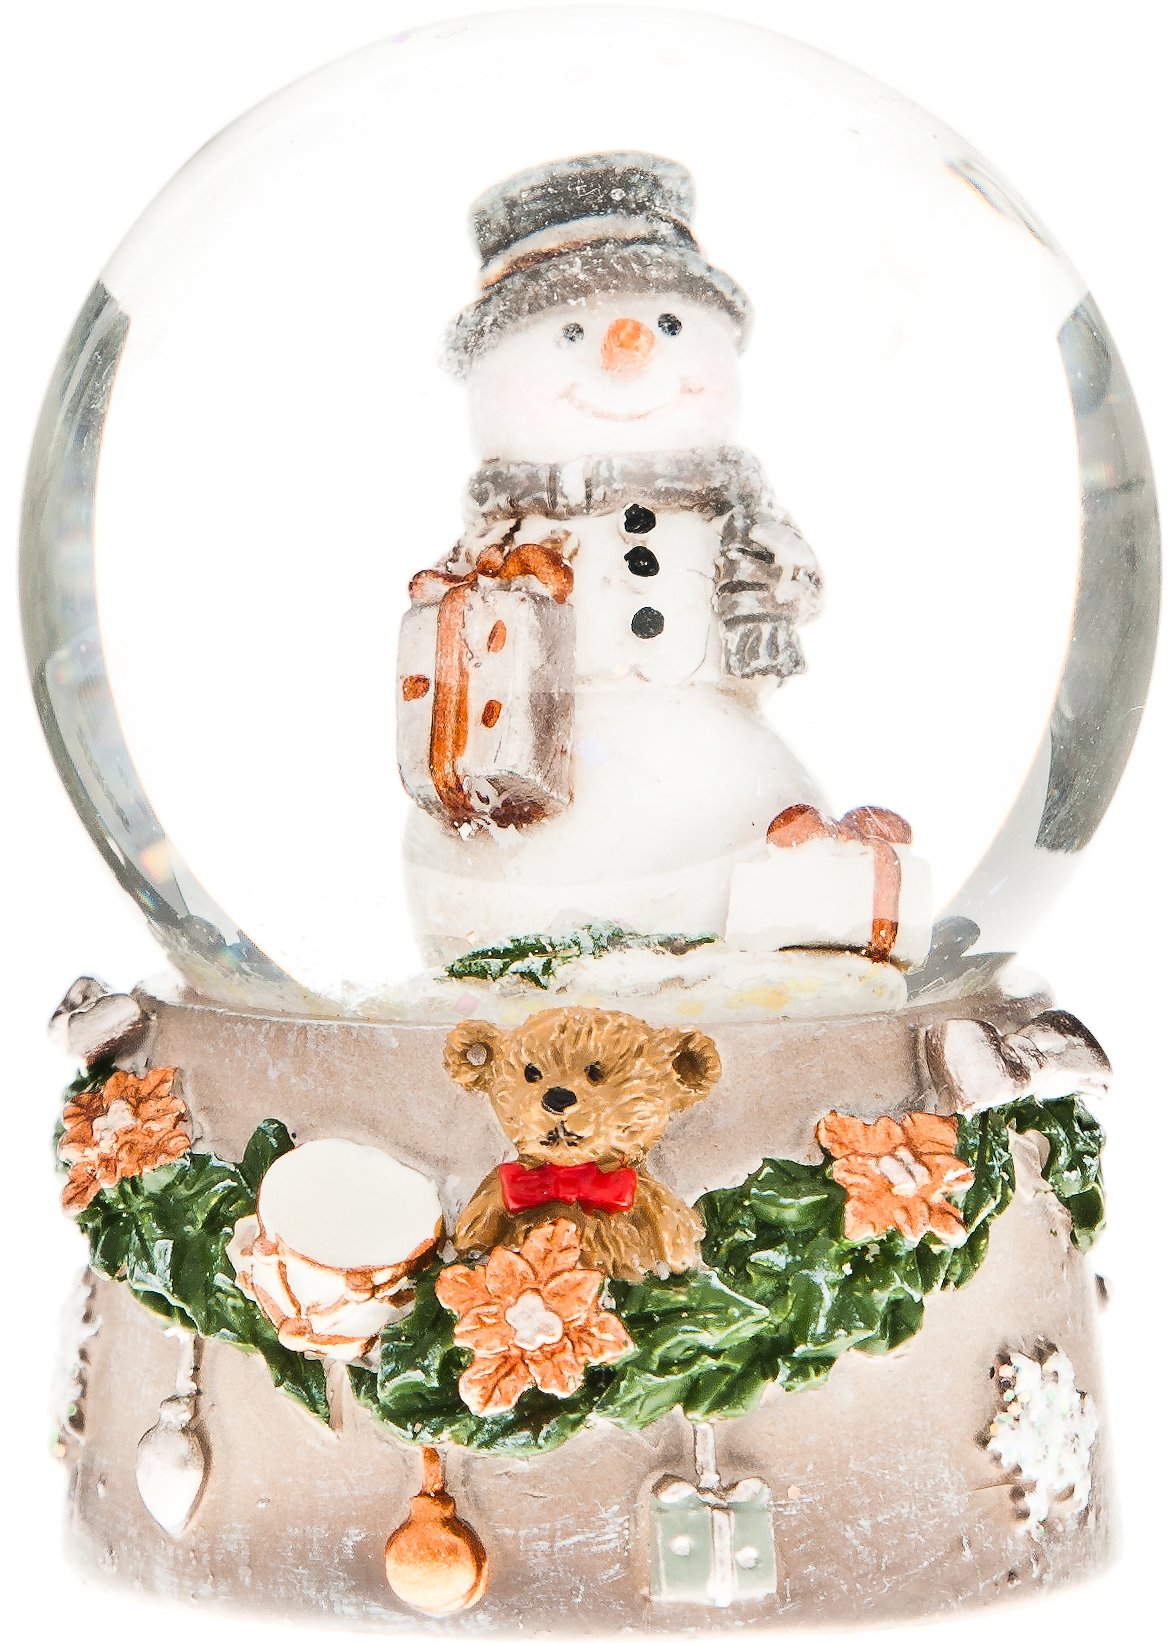 Sněžítko sněhulák s dárkem na podstavci s medvídkem